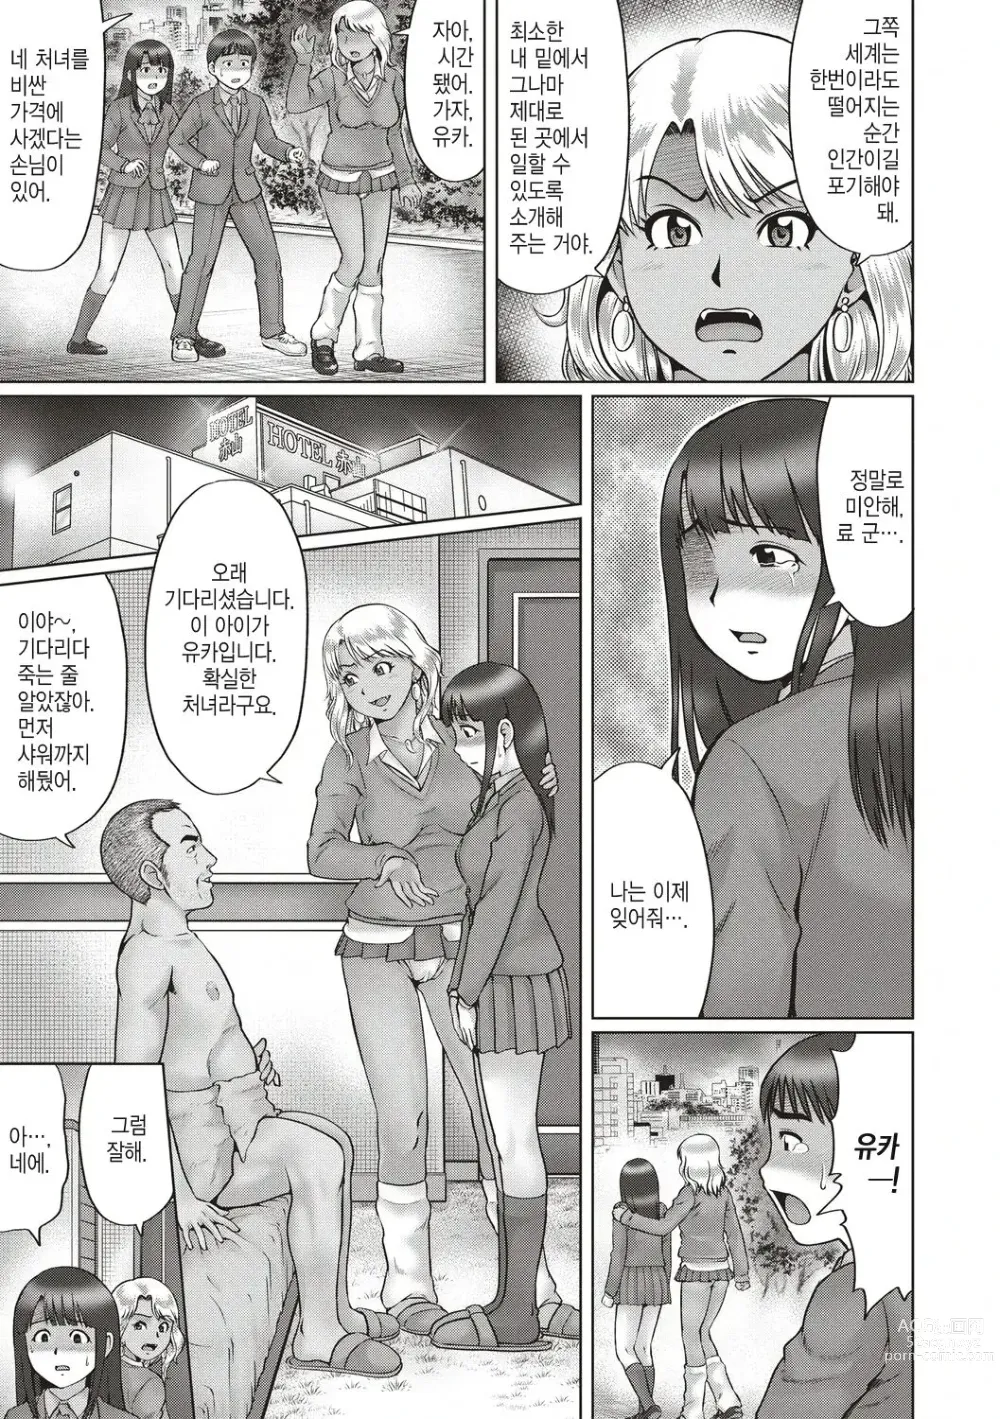 Page 3 of manga 기나긴 밤... -전편-